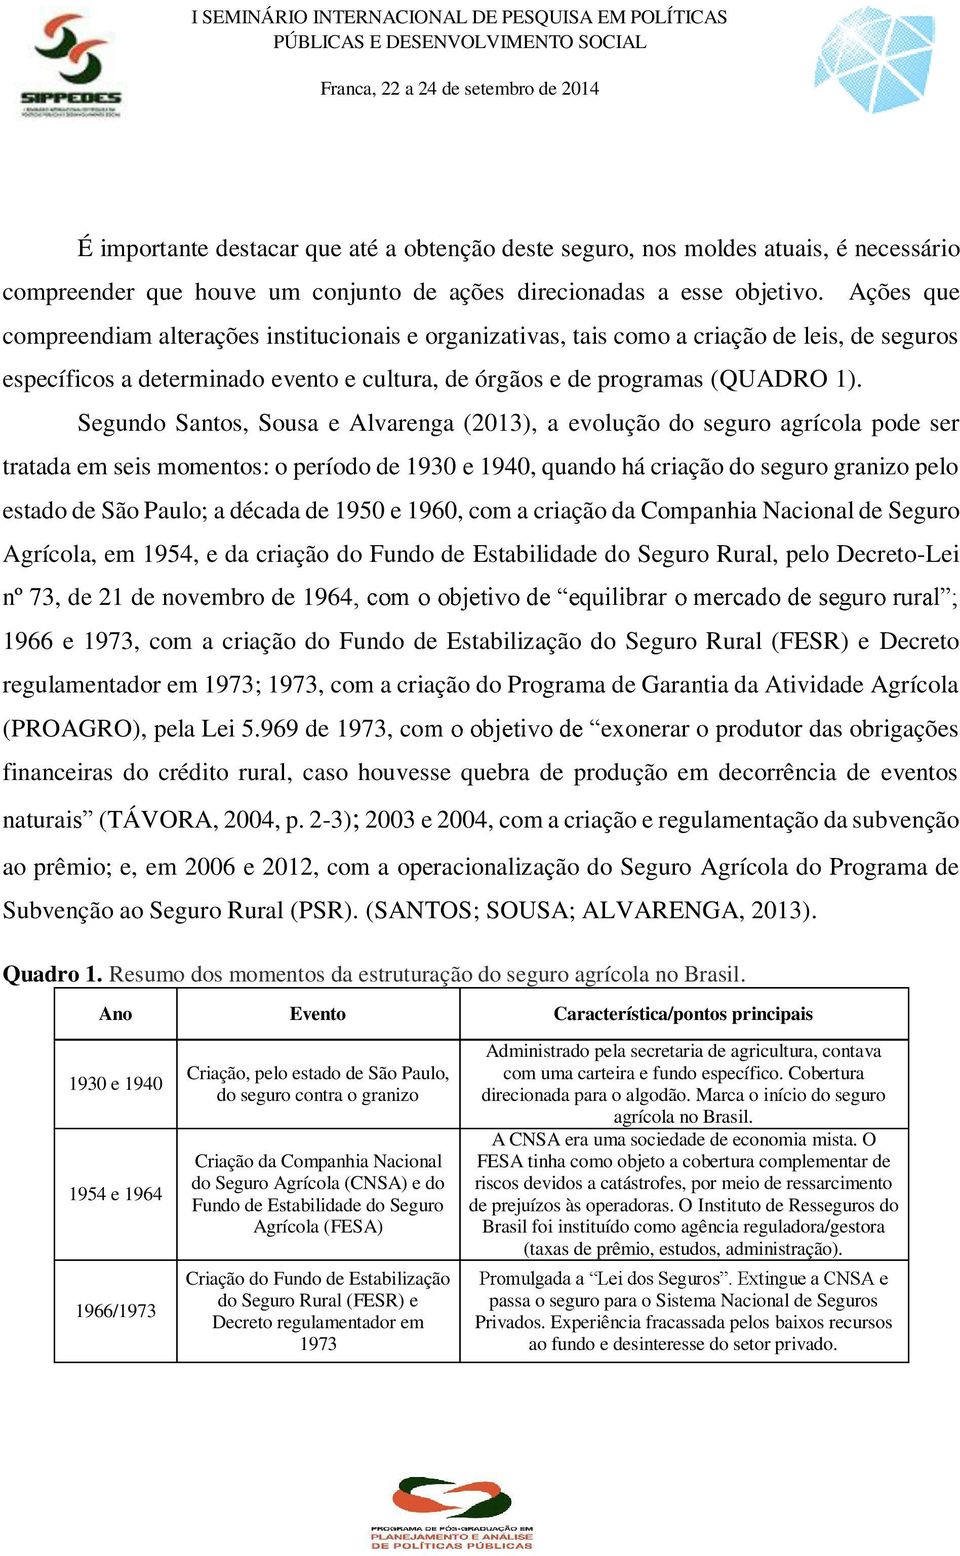 Segundo Santos, Sousa e Alvarenga (2013), a evolução do seguro agrícola pode ser tratada em seis momentos: o período de 1930 e 1940, quando há criação do seguro granizo pelo estado de São Paulo; a